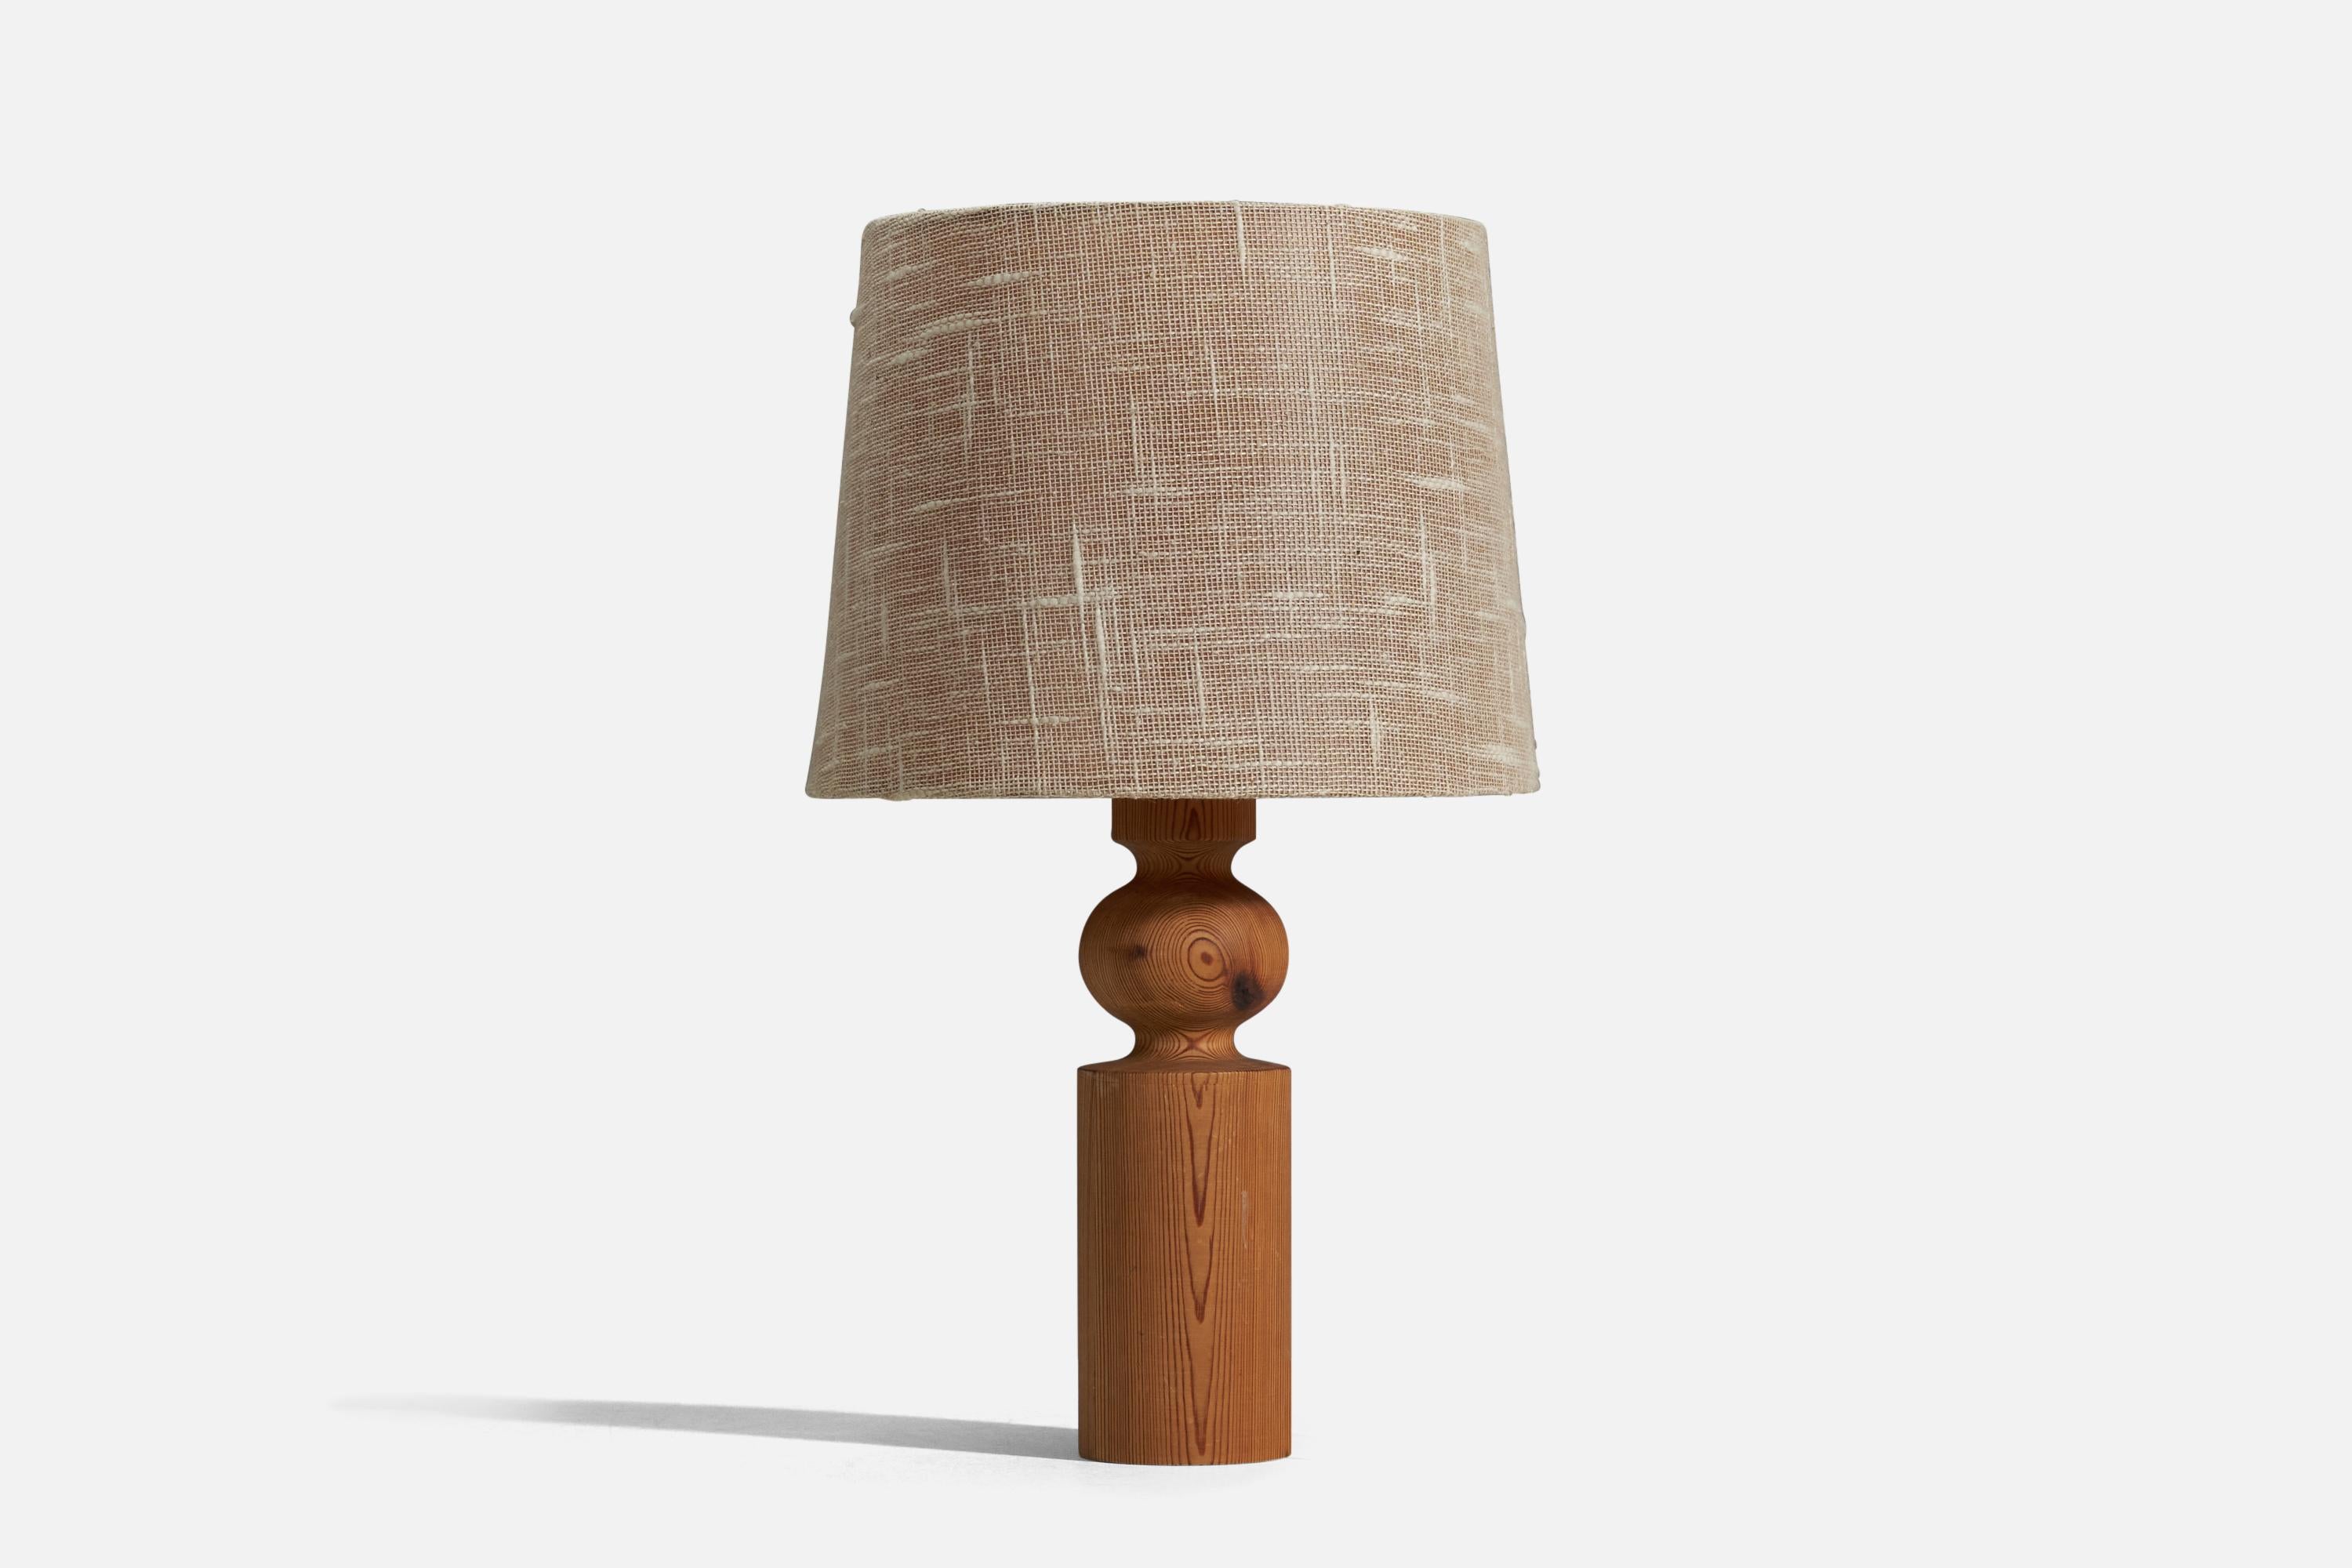 Lampe de table en pin massif et tissu beige conçue par Uno Kristiansson et produite par Luxus, Suède, années 1960.

Vendu avec l'abat-jour d'origine monté sur le diffuseur acrylique d'origine. Les dimensions indiquées sont celles de la lampe de